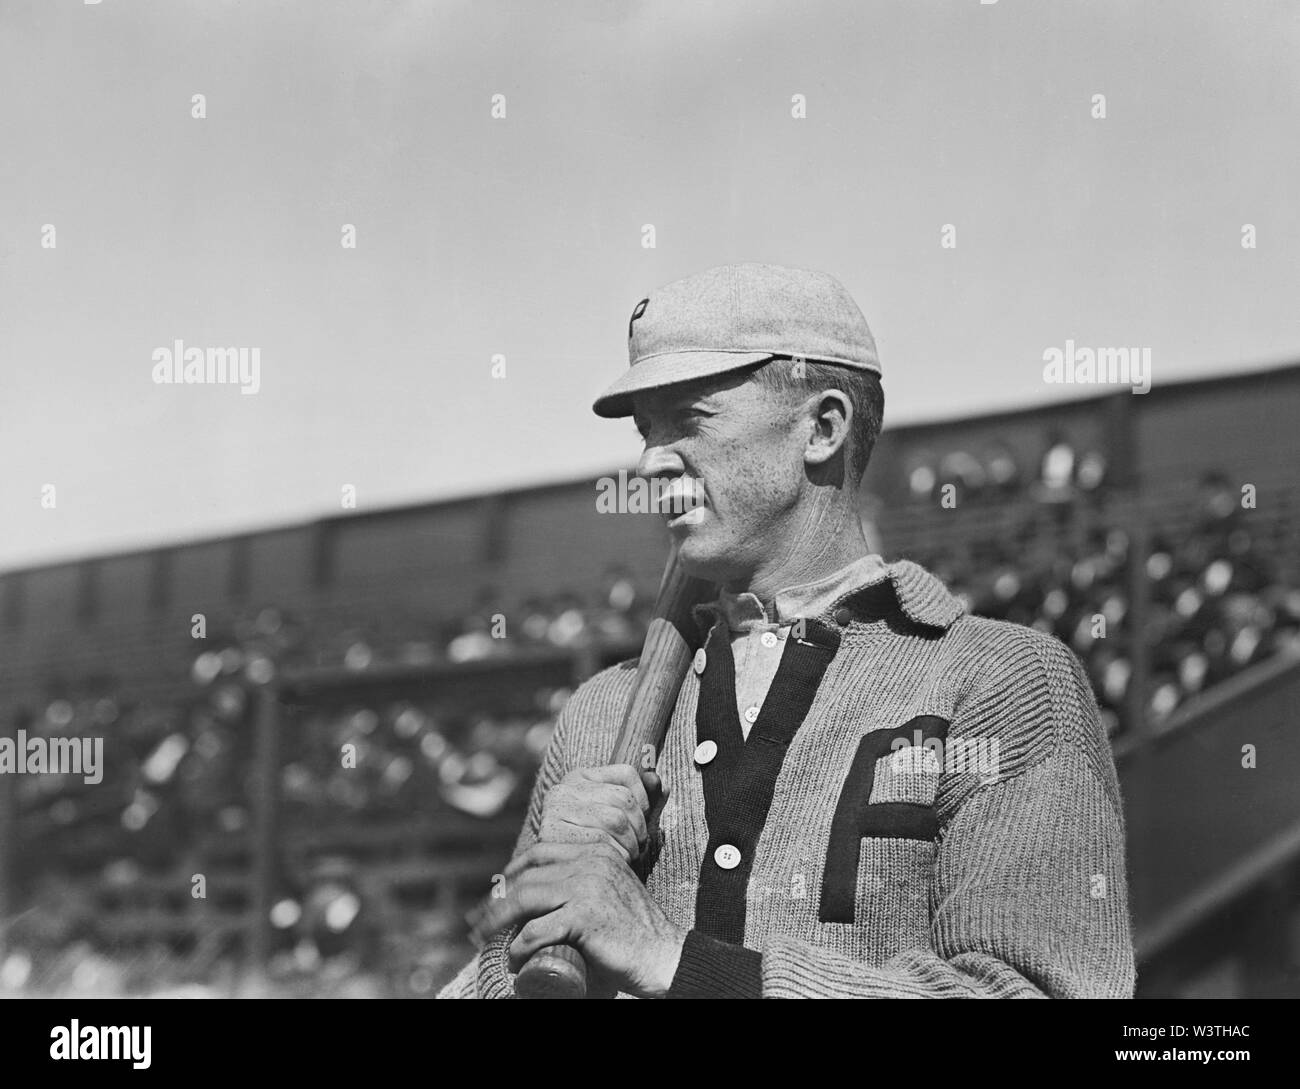 Grover Cleveland Alexander, joueur de ligue majeure de baseball des Phillies de Philadelphie, Portrait, demi-longueur, bain News Service, 1911 Banque D'Images